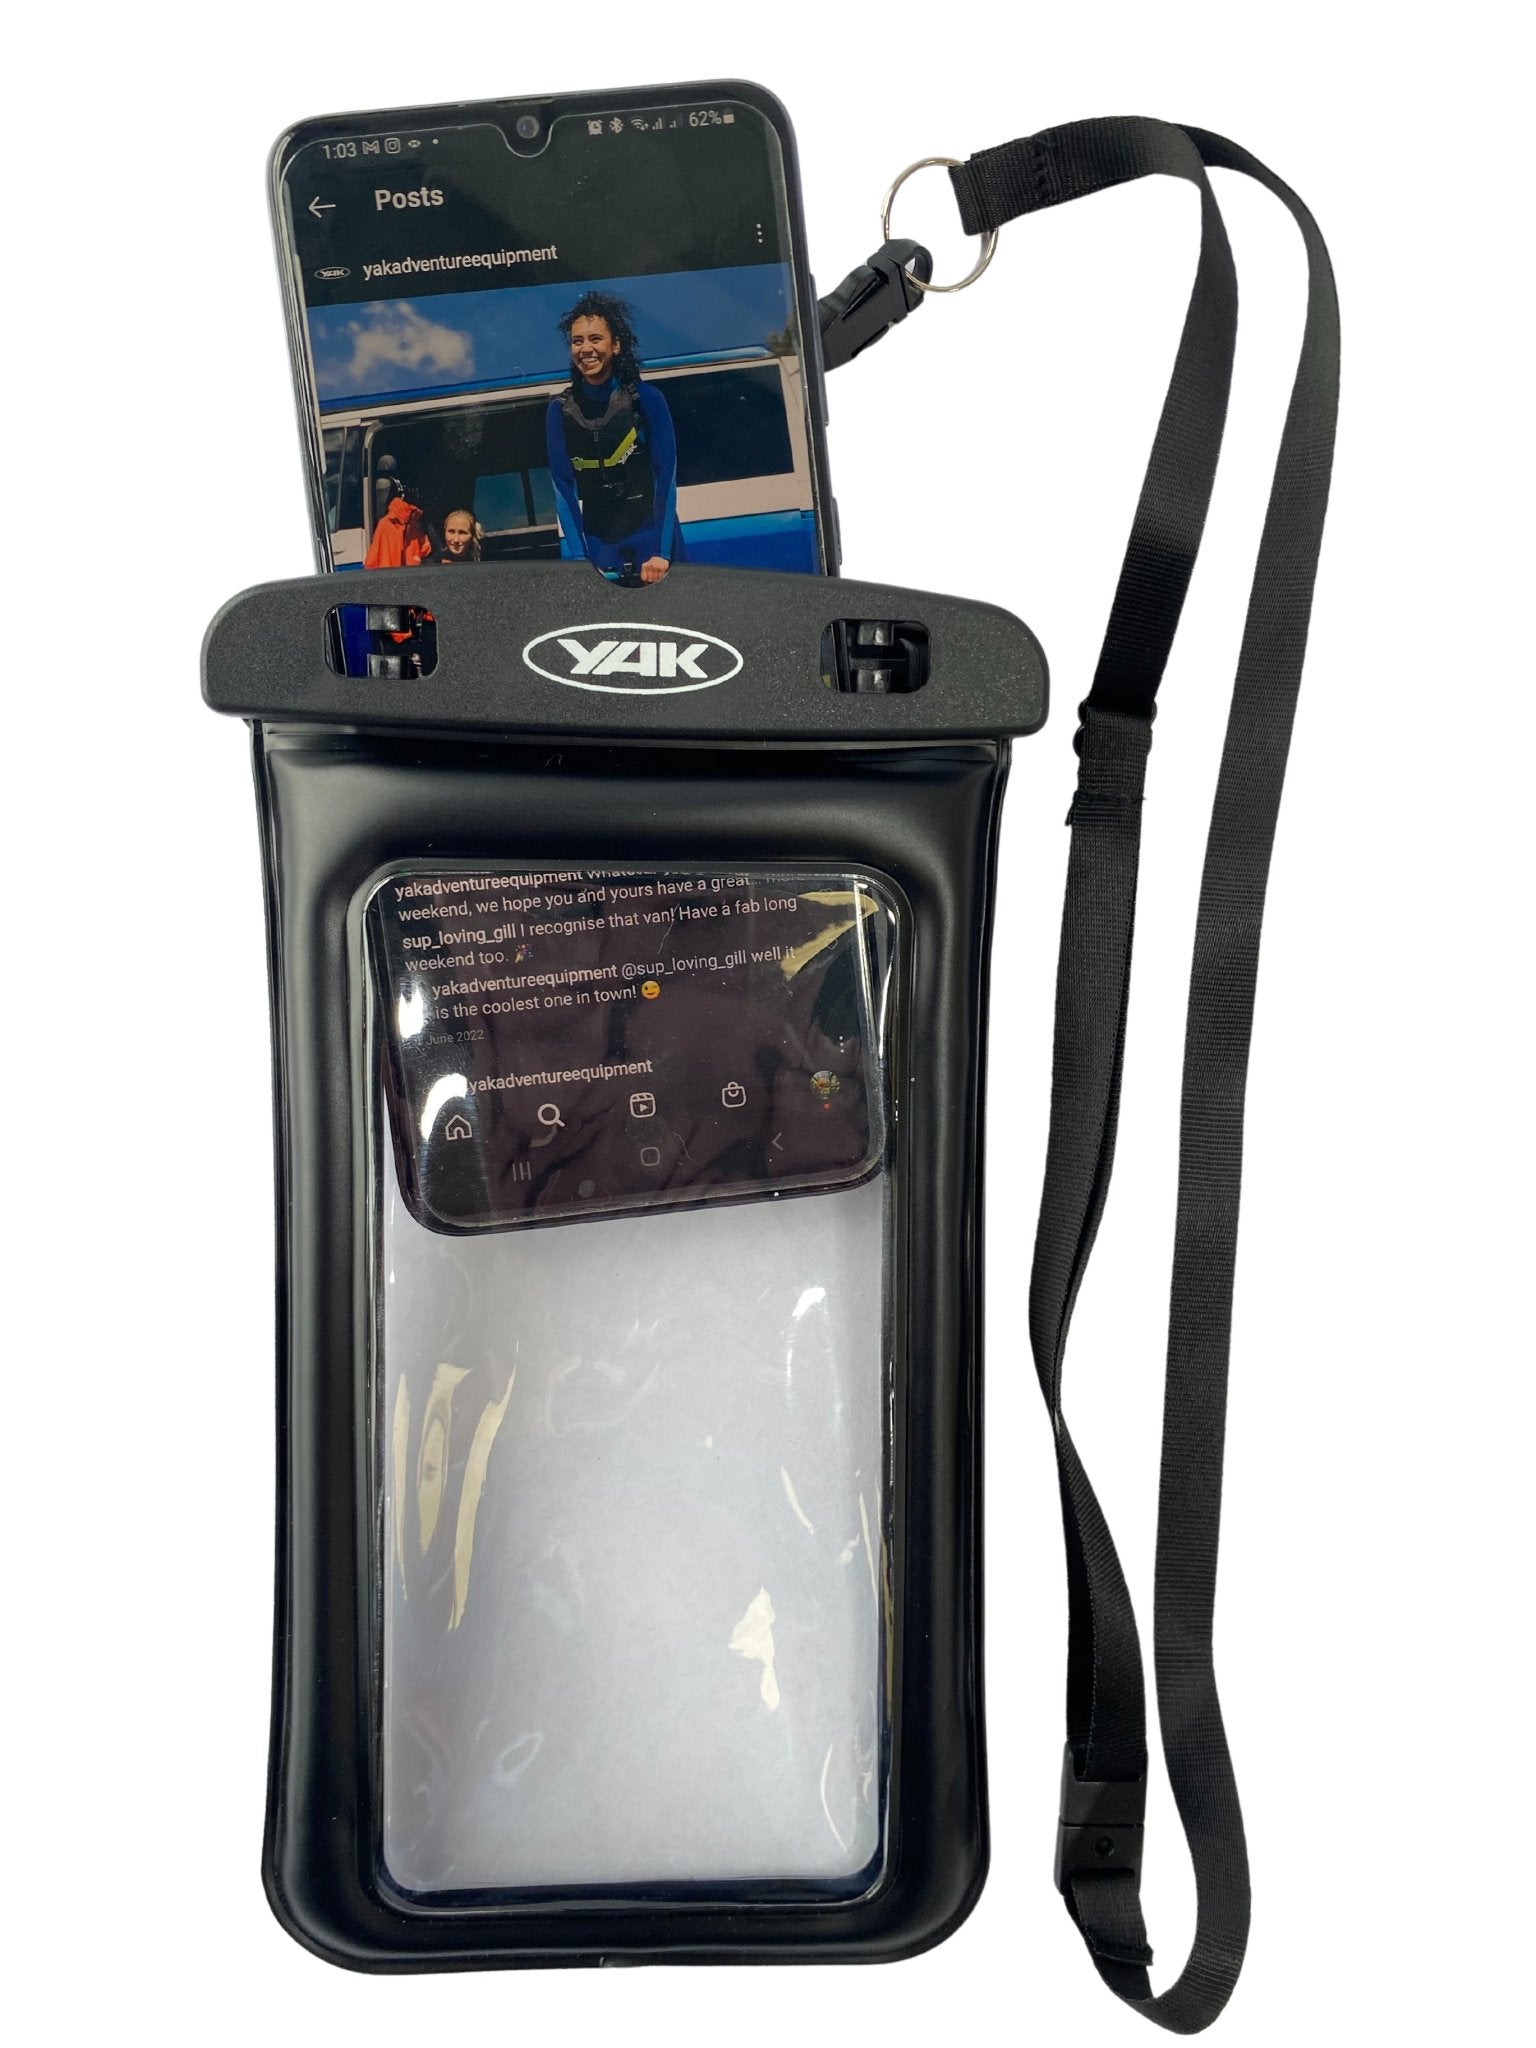 Yak Waterproof Phone Case - Worthing Watersports - 7003332 - Dry Bags - YAK